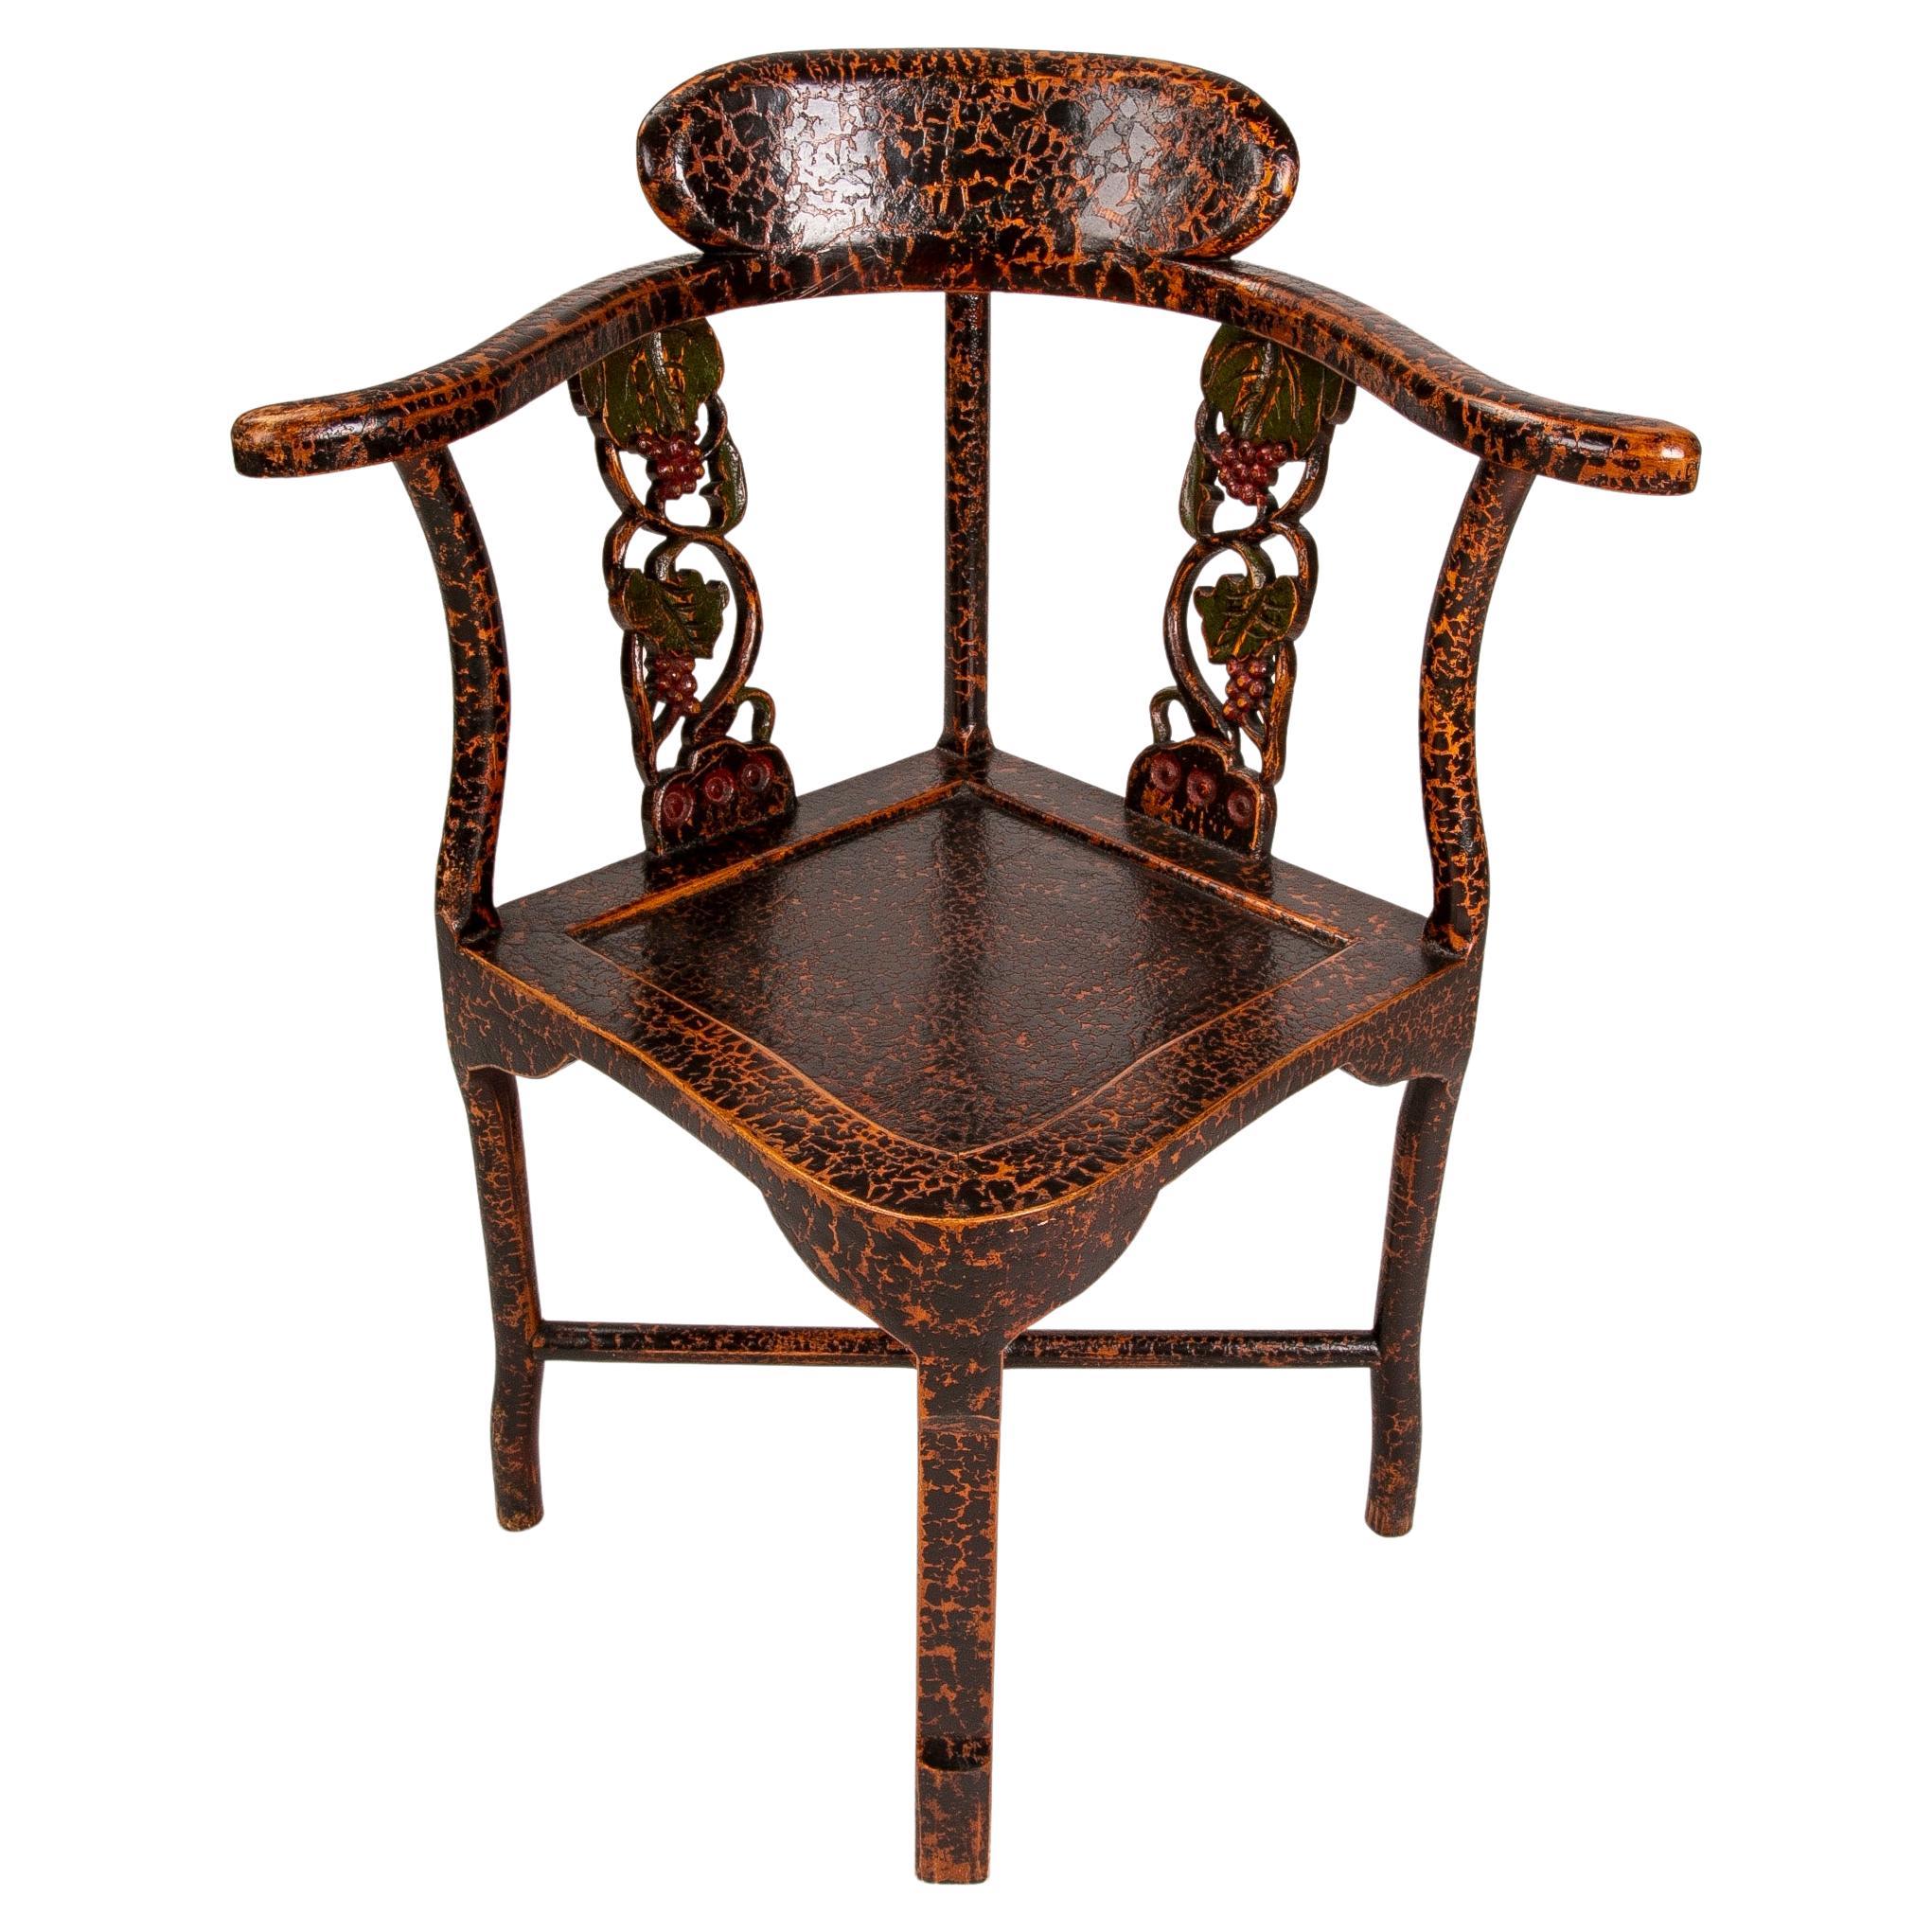 Chaise d'angle avec accoudoirs en bois laqué et fleurs sculptées sur le dossier